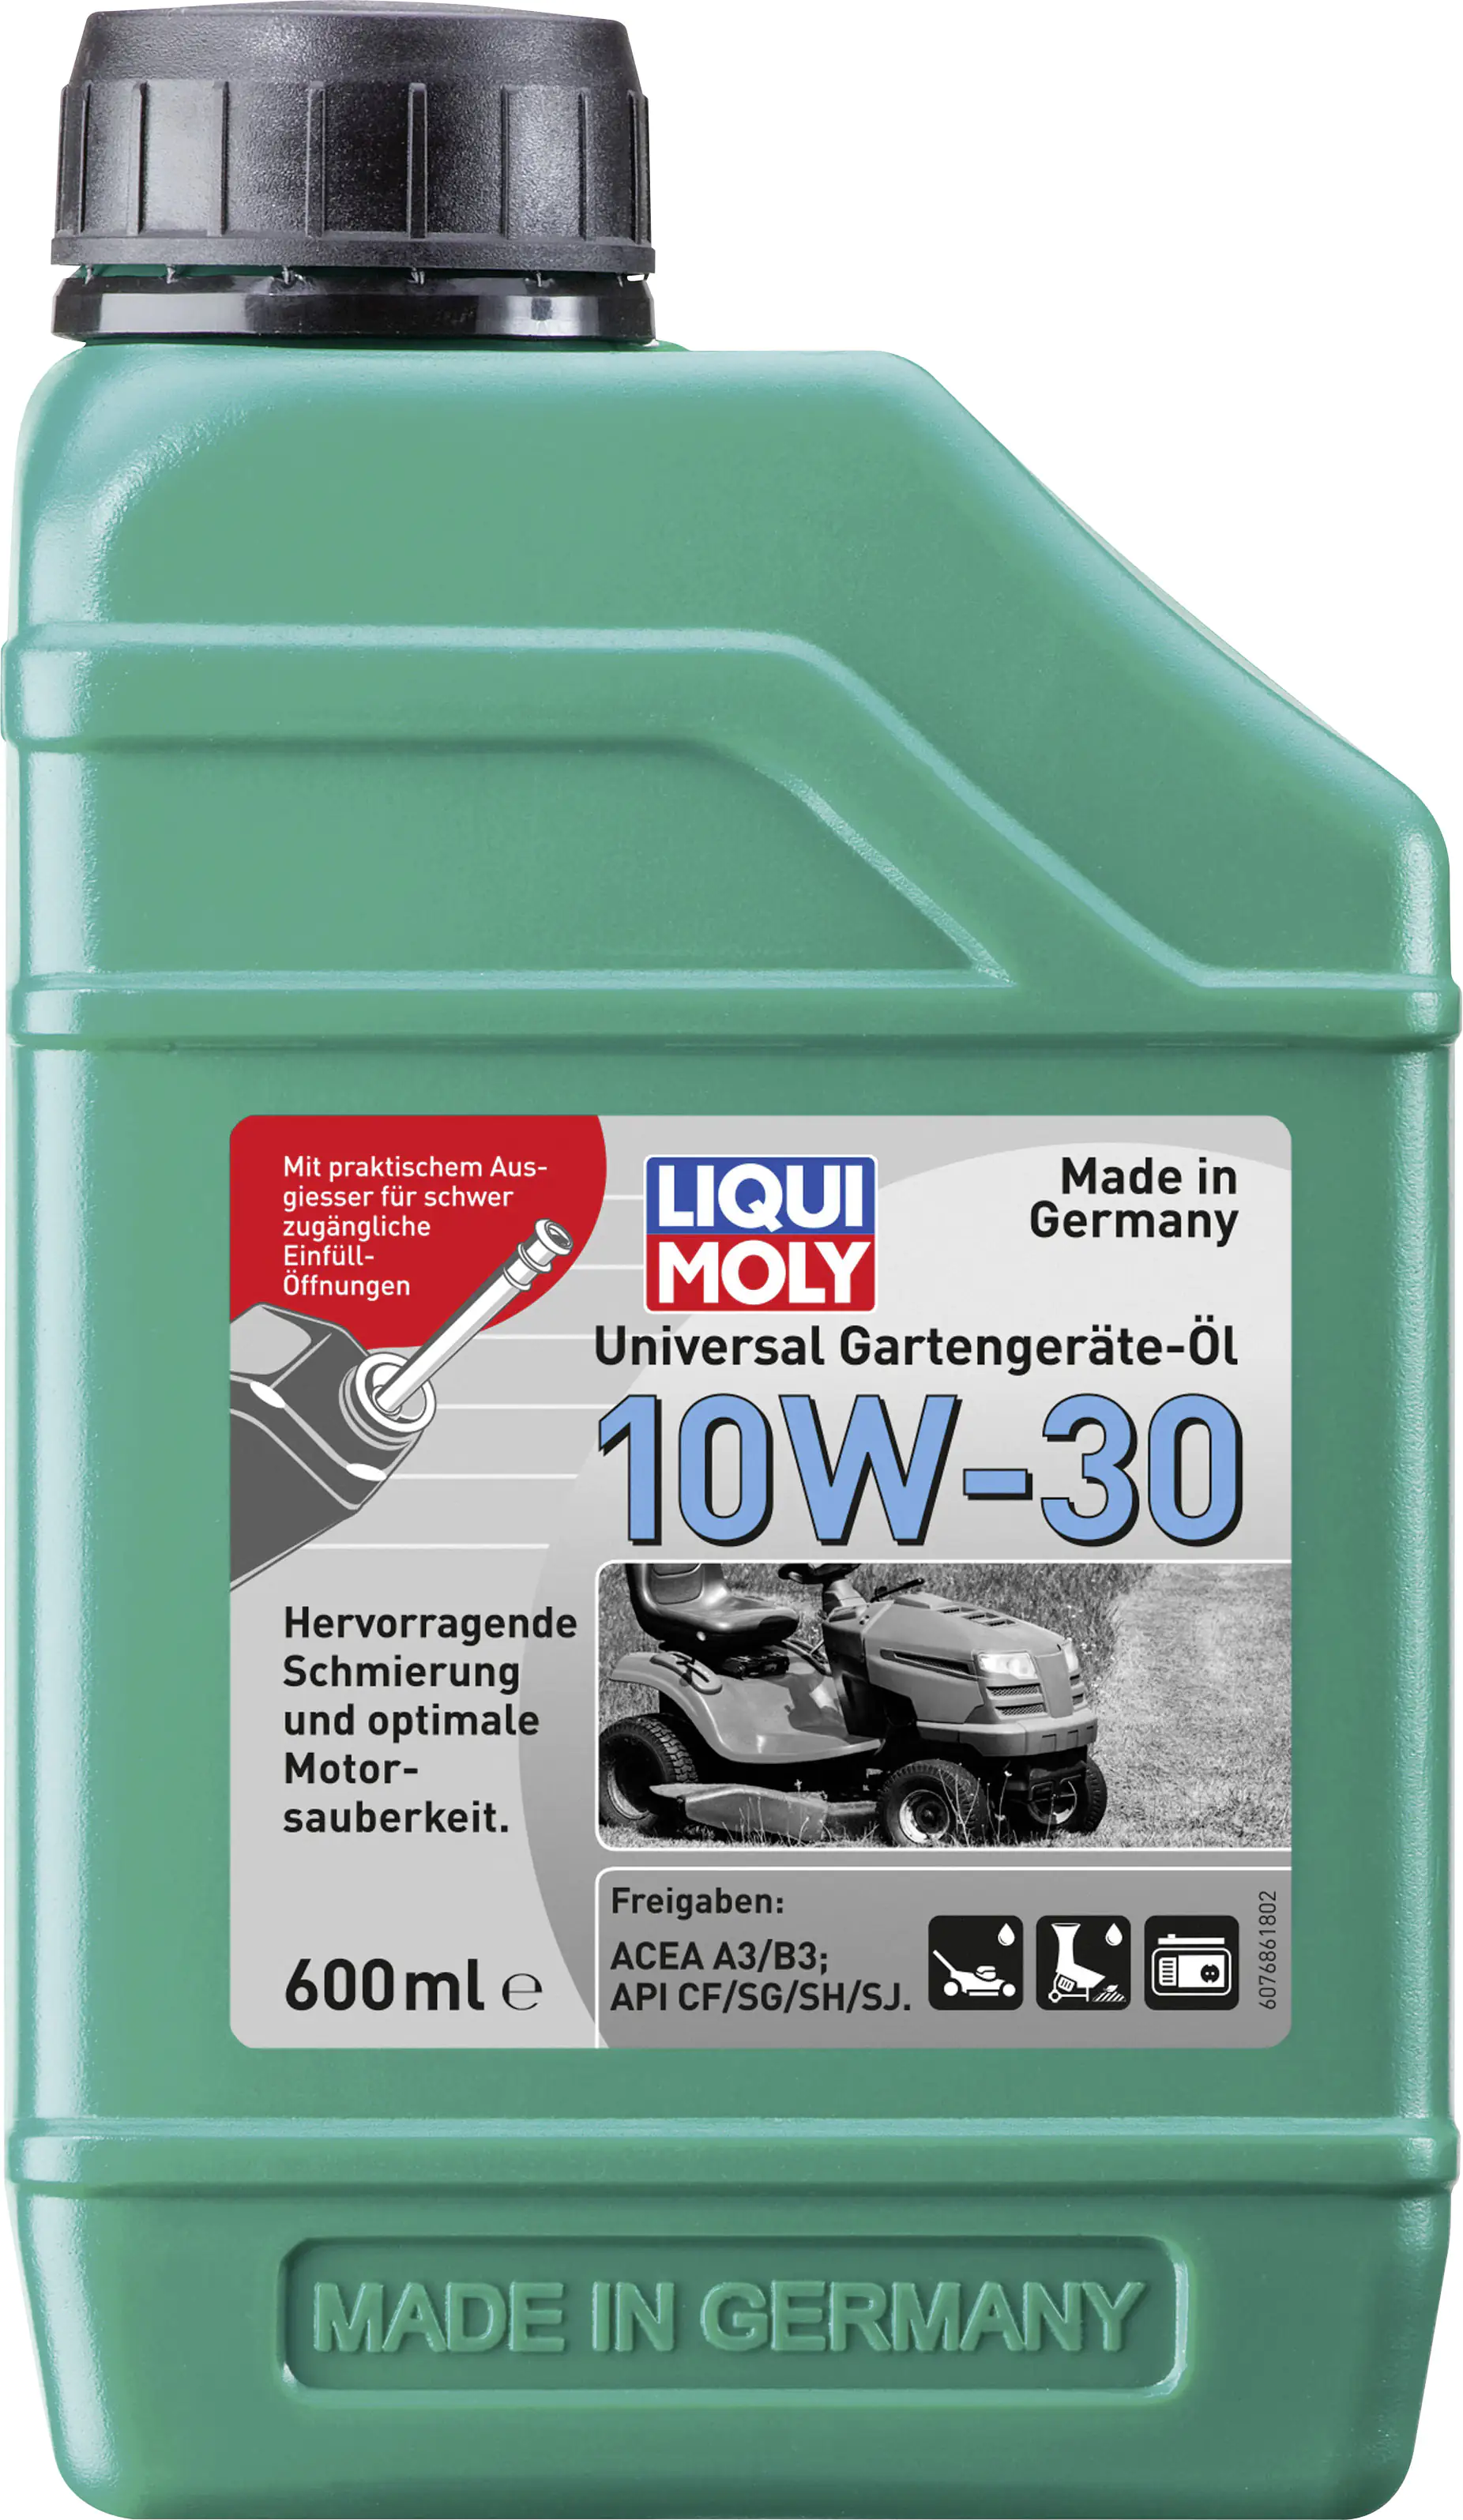 Universal Gartengeräte-Öl 10W-30